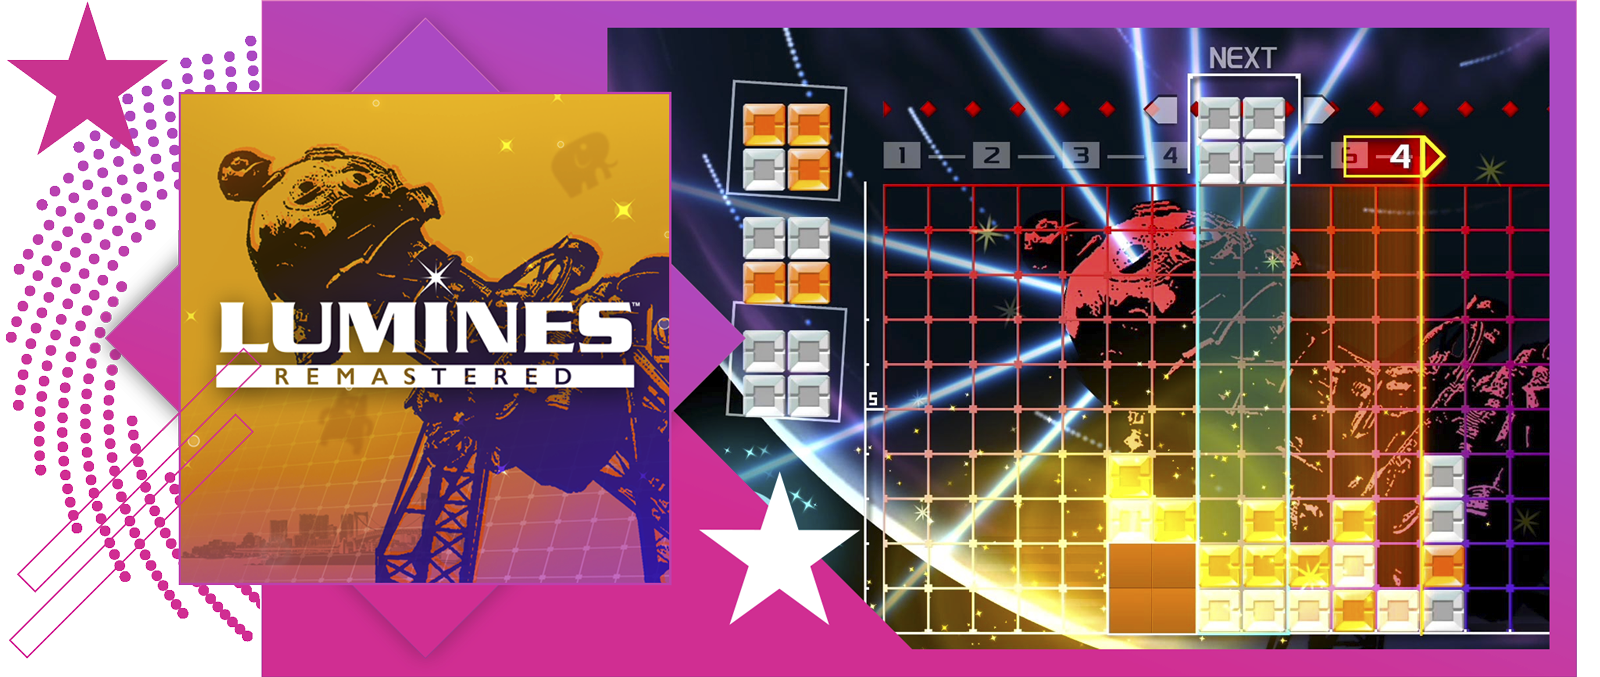 صورة رمزية لأفضل ألعاب الإيقاع الموسيقي تعرض صورة فنية وتجربة لعب من Lumines Remastered.